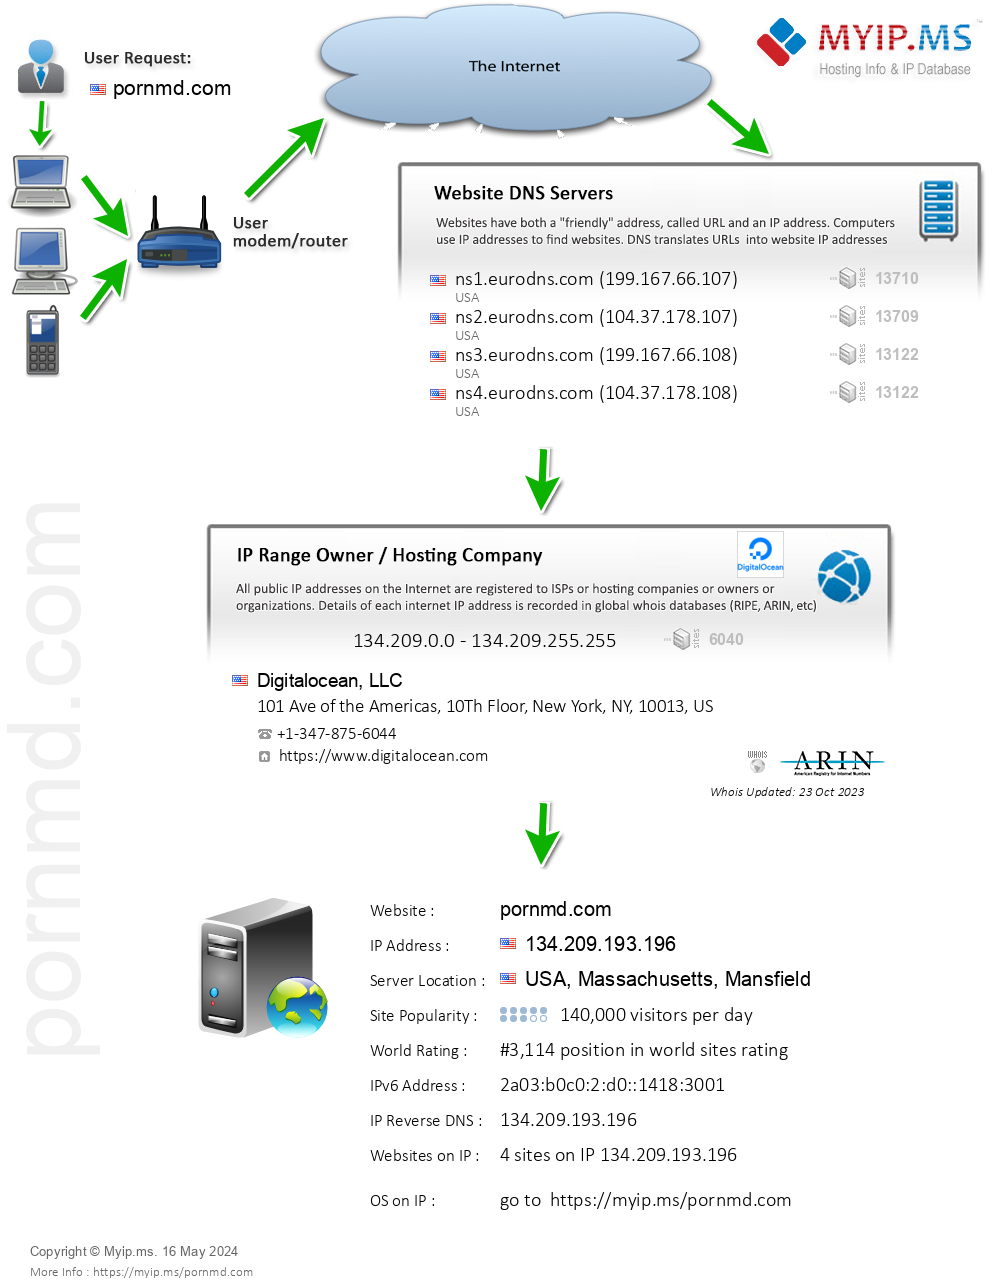 Pornmd.com - Website Hosting Visual IP Diagram